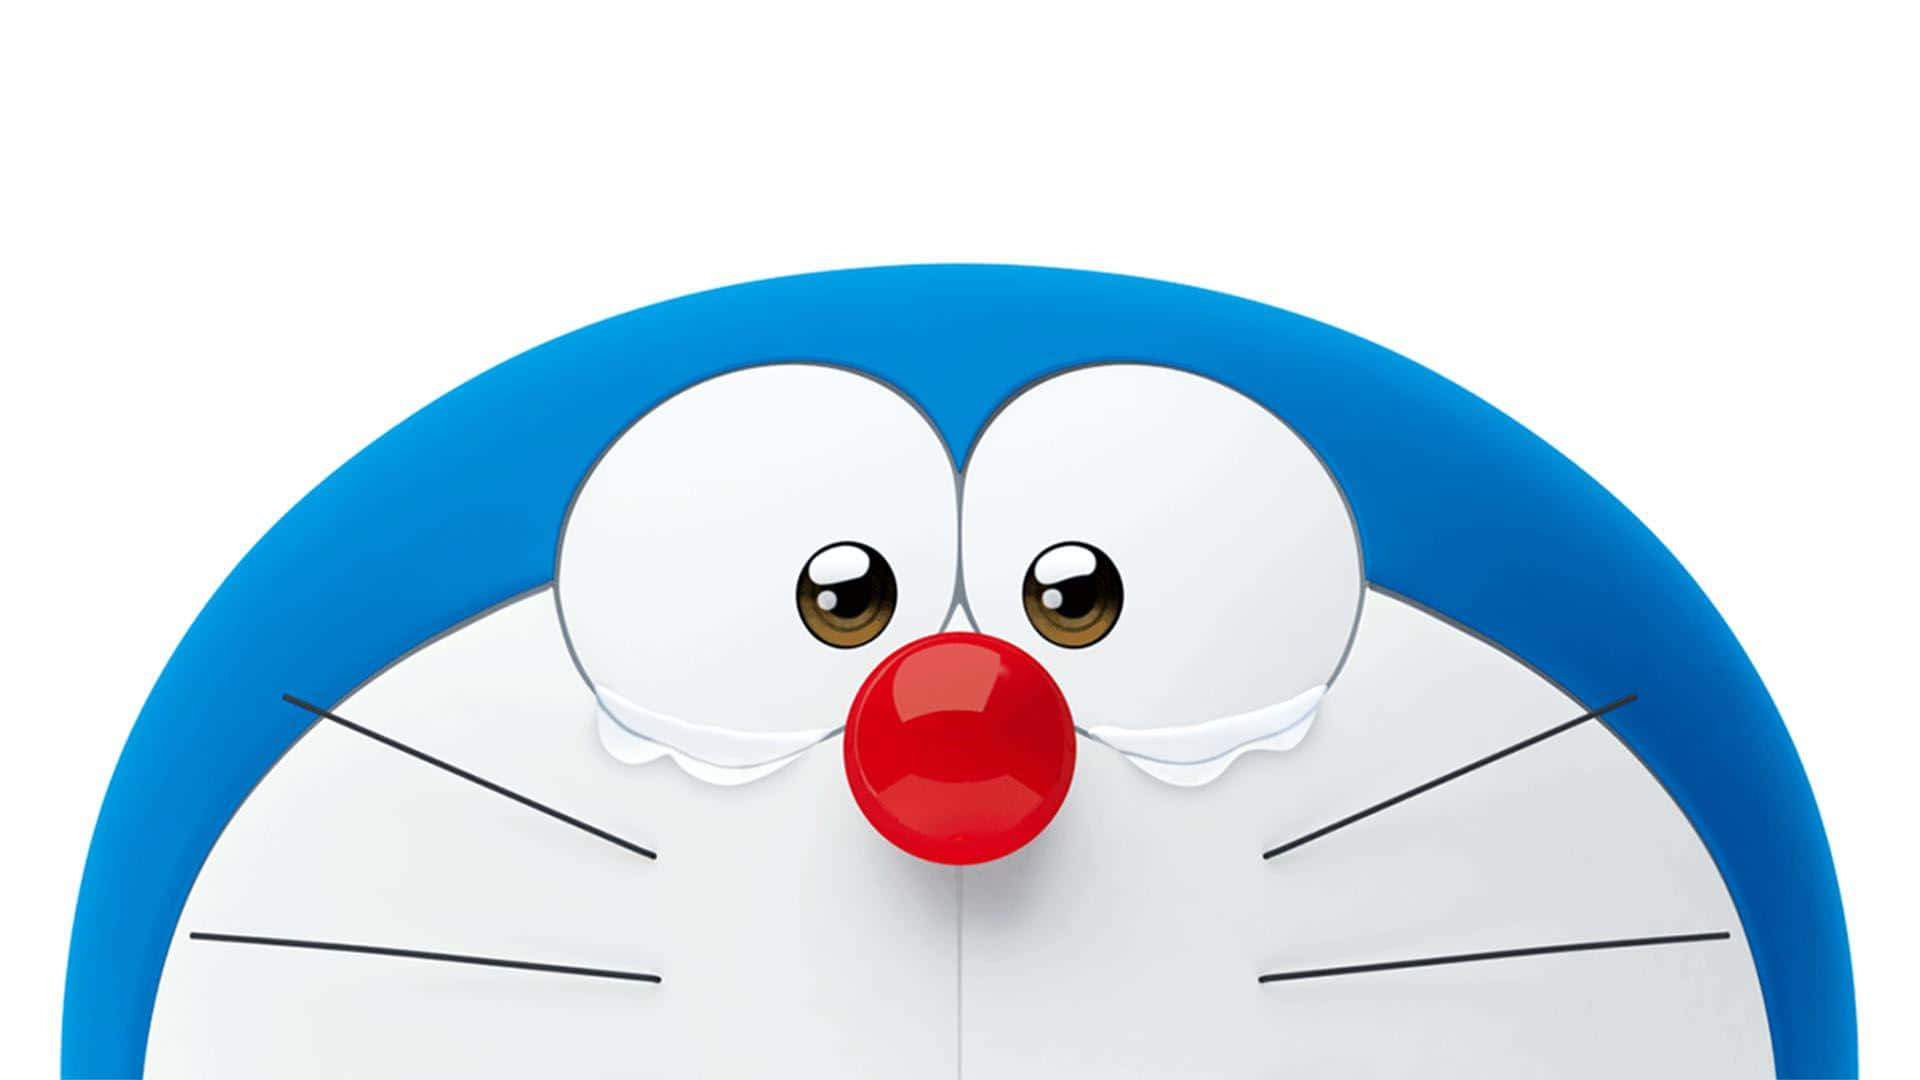 Doraemonse Destaca Con Orgullo Con Su Icónico Cuerpo Azul Y Su Sombrero.